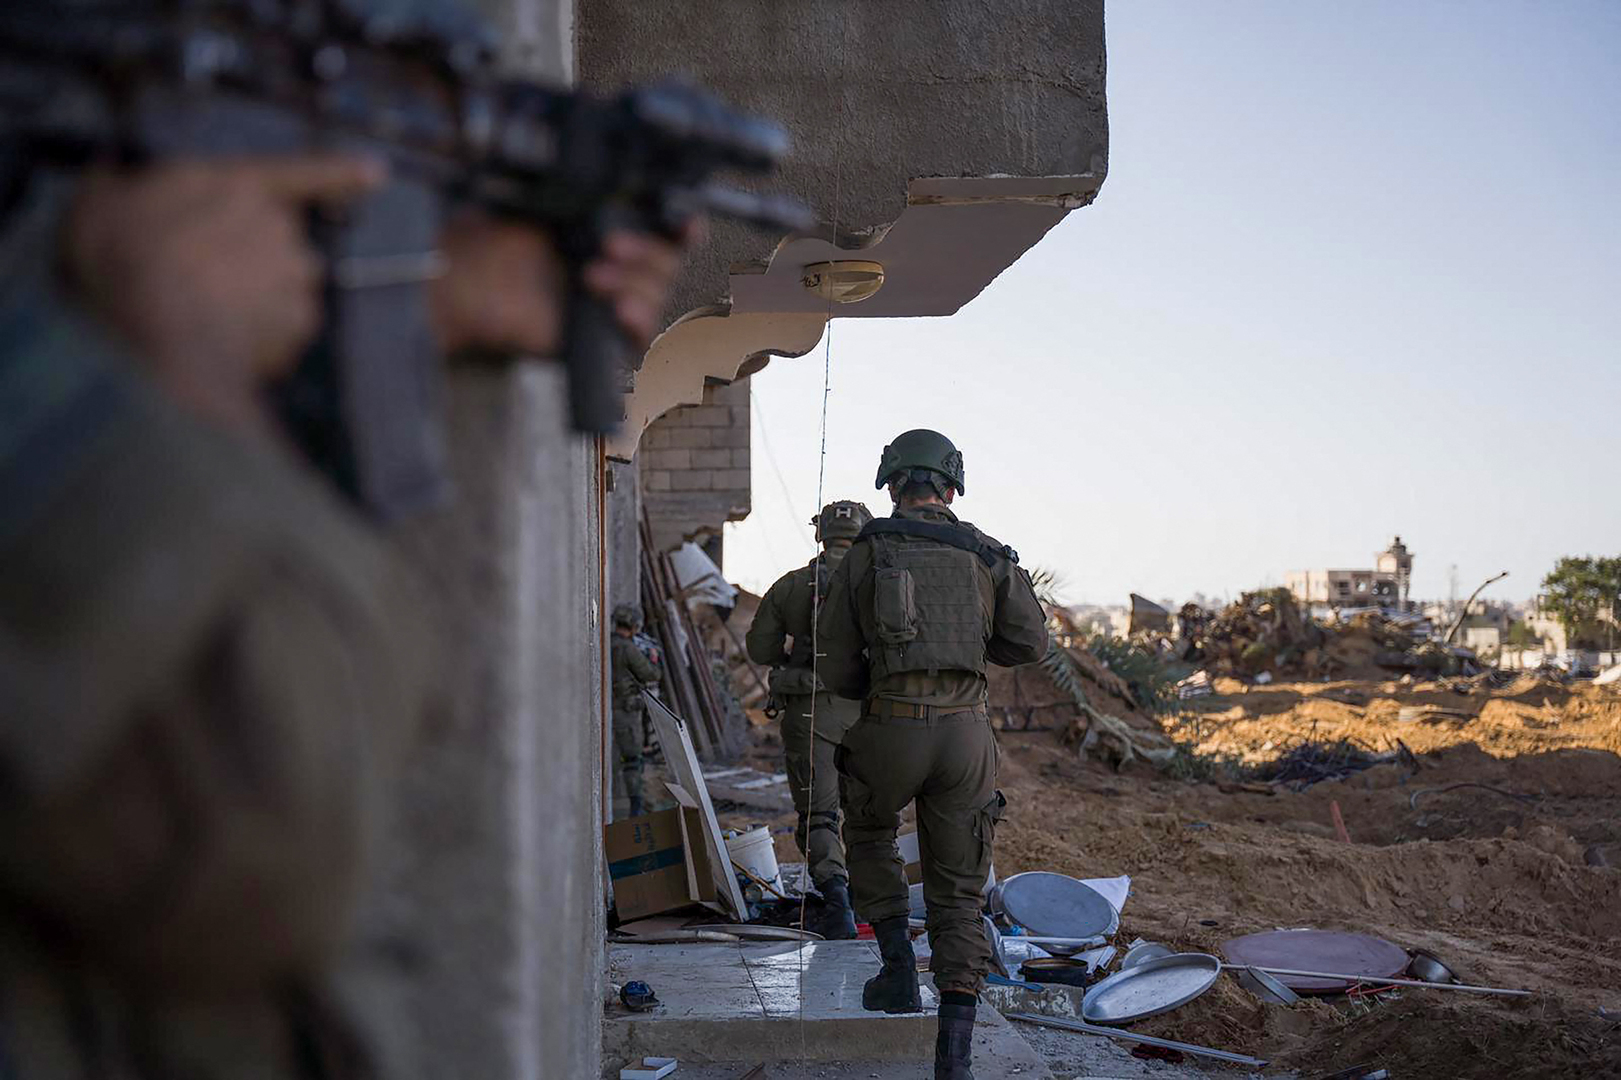 الجيش الإسرائيلي يعلن إصابة عدد من جنوده في معارك شمال غزة بينهم 4 في حالة خطرة